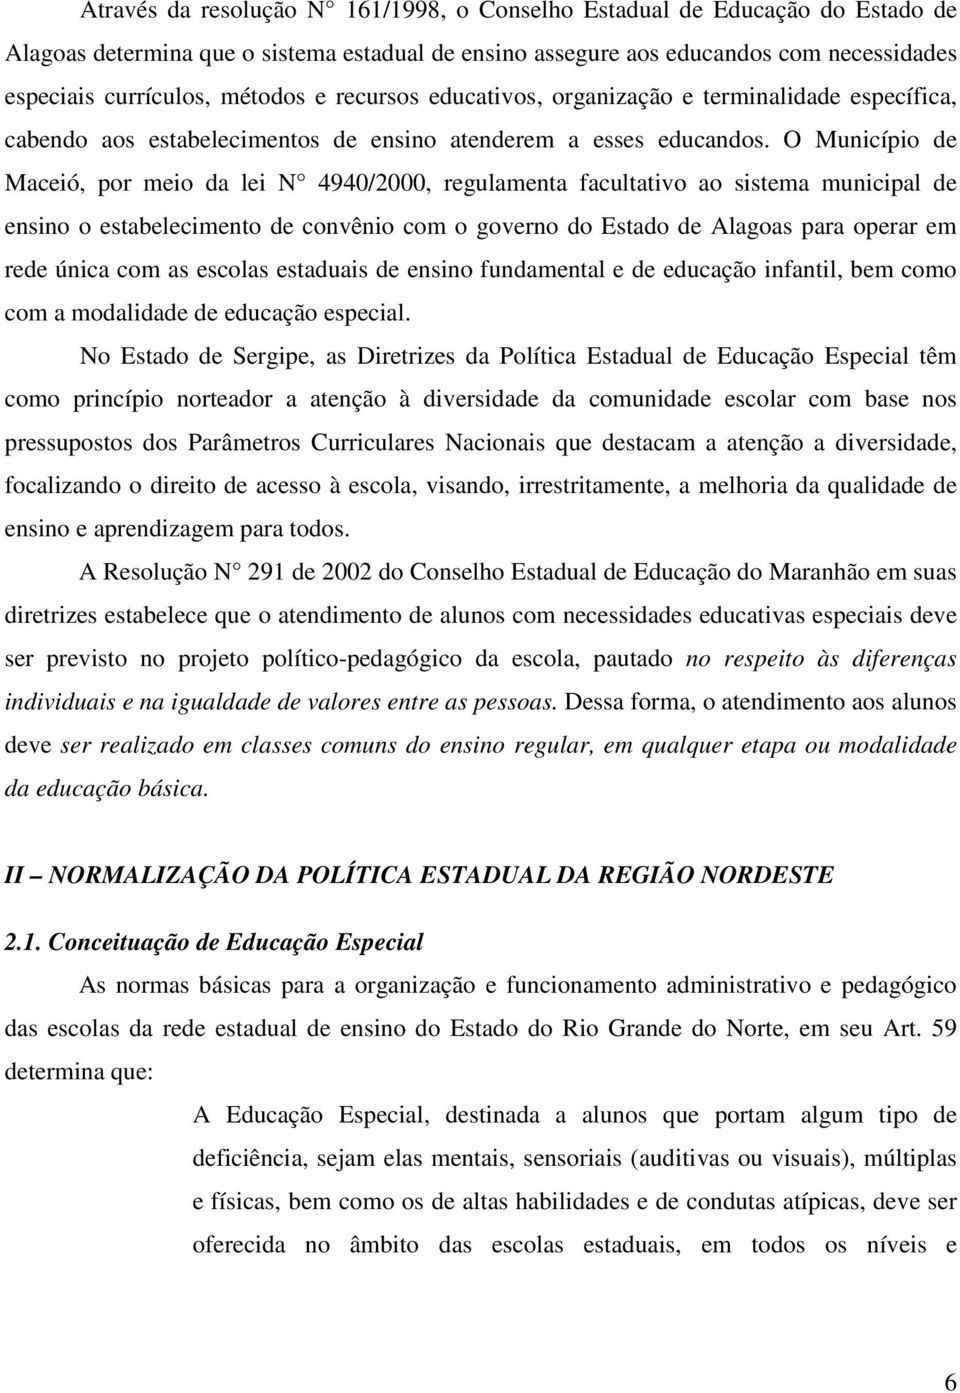 O Município de Maceió, por meio da lei N 4940/2000, regulamenta facultativo ao sistema municipal de ensino o estabelecimento de convênio com o governo do Estado de Alagoas para operar em rede única